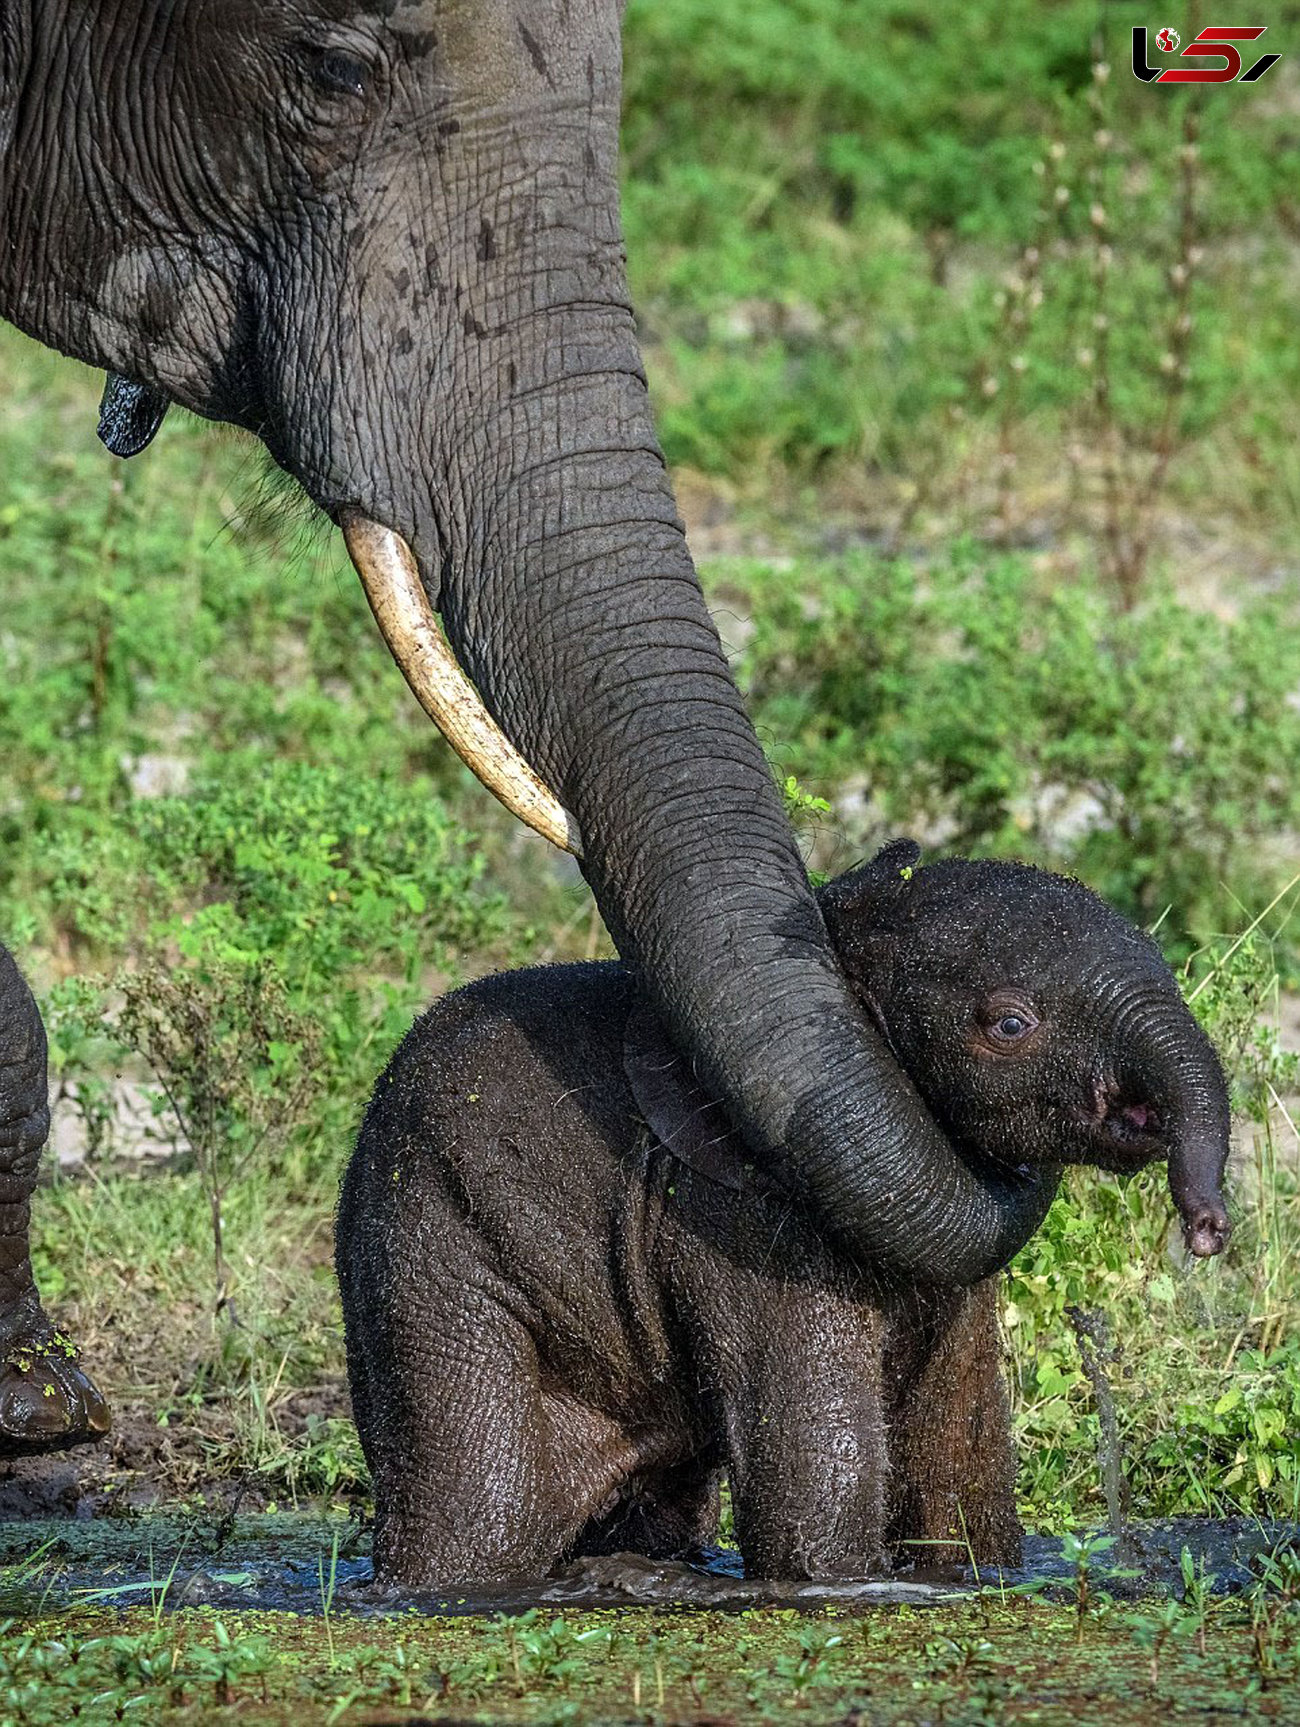 تنبیه فیل کوچولو بازیگوش توسط مادرش + تصاویر